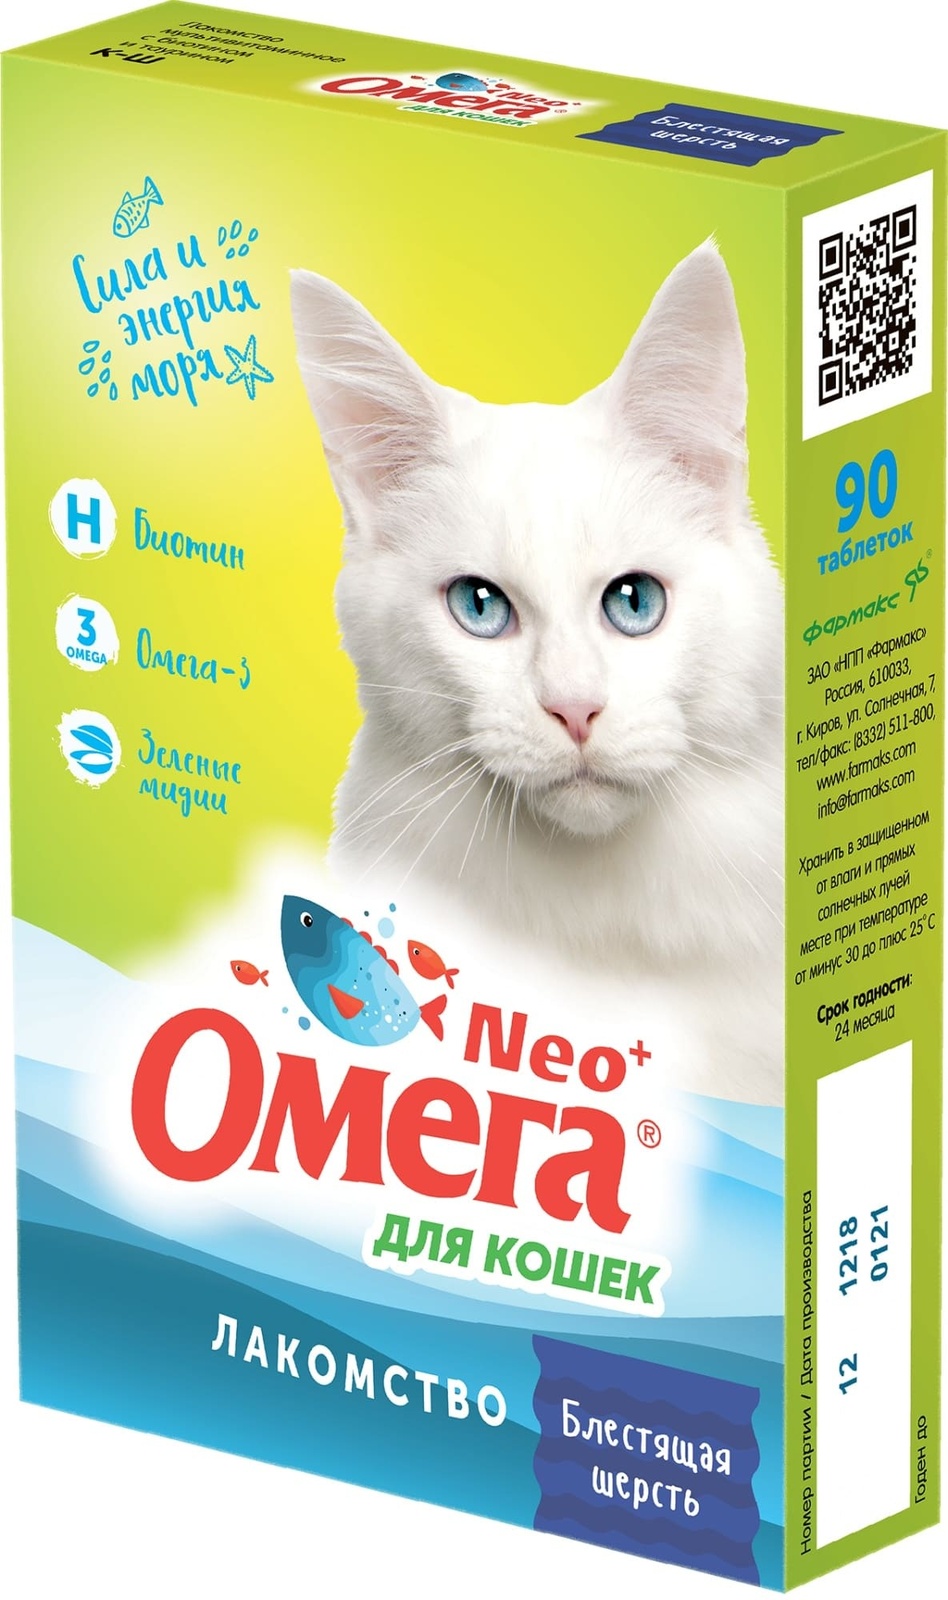 Фармакс Фармакс мультивитаминное лакомство Омега Neo+ Блестящая шерсть с биотином и таурином для кошек (60 г) 34783